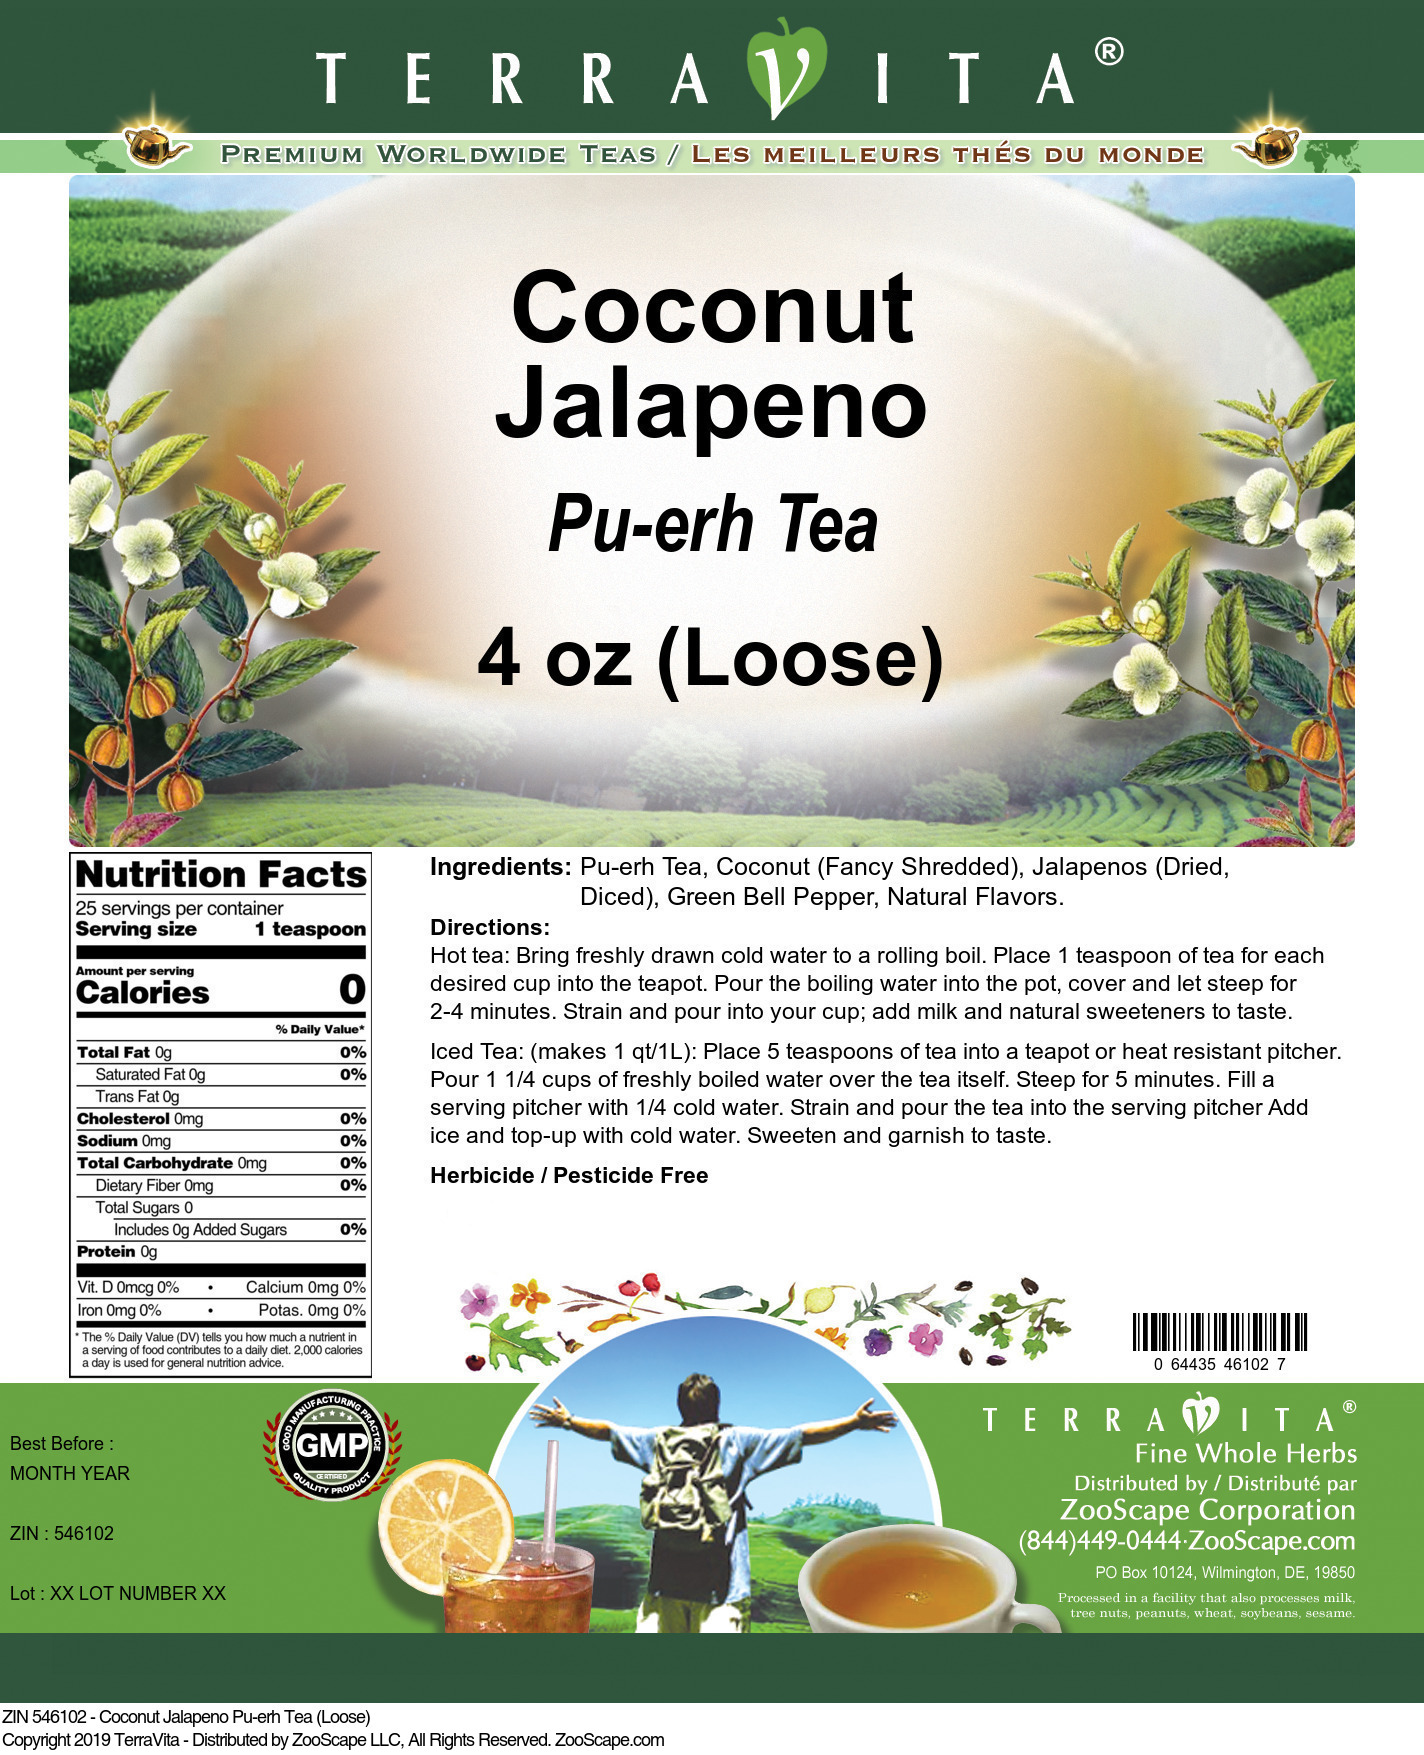 Coconut Jalapeno Pu-erh Tea (Loose) - Label